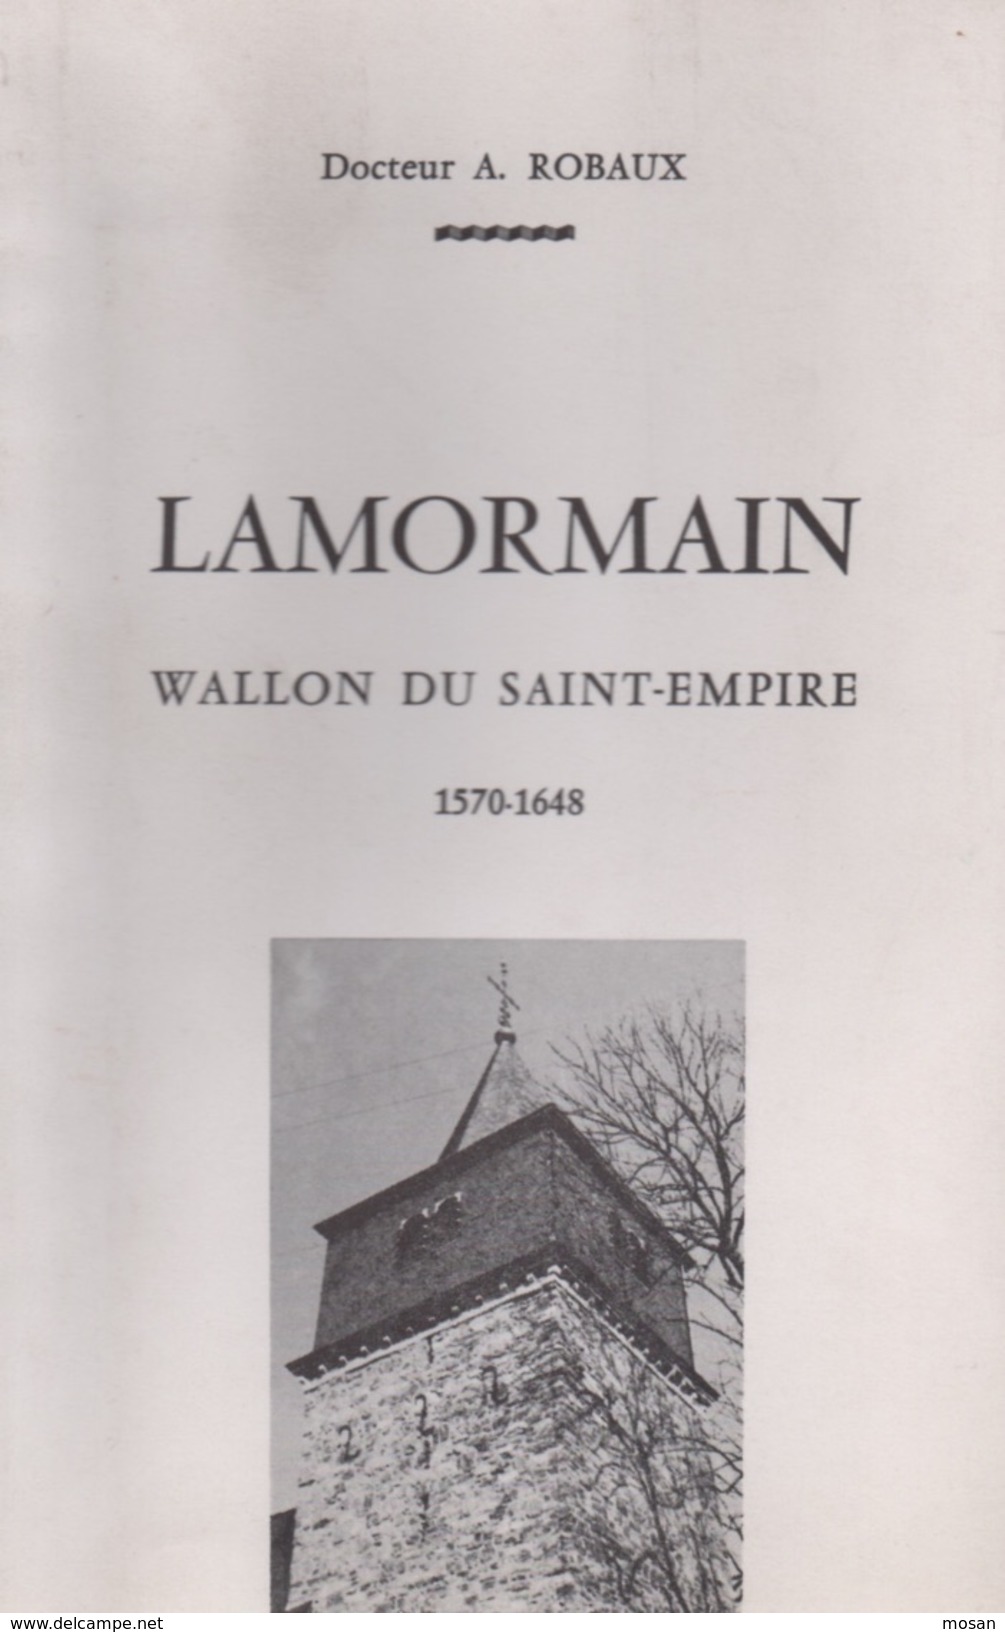 Lamormain. Wallon Du Saint-Empire. Docteur A. Robaux. Luxembourg - Belgium